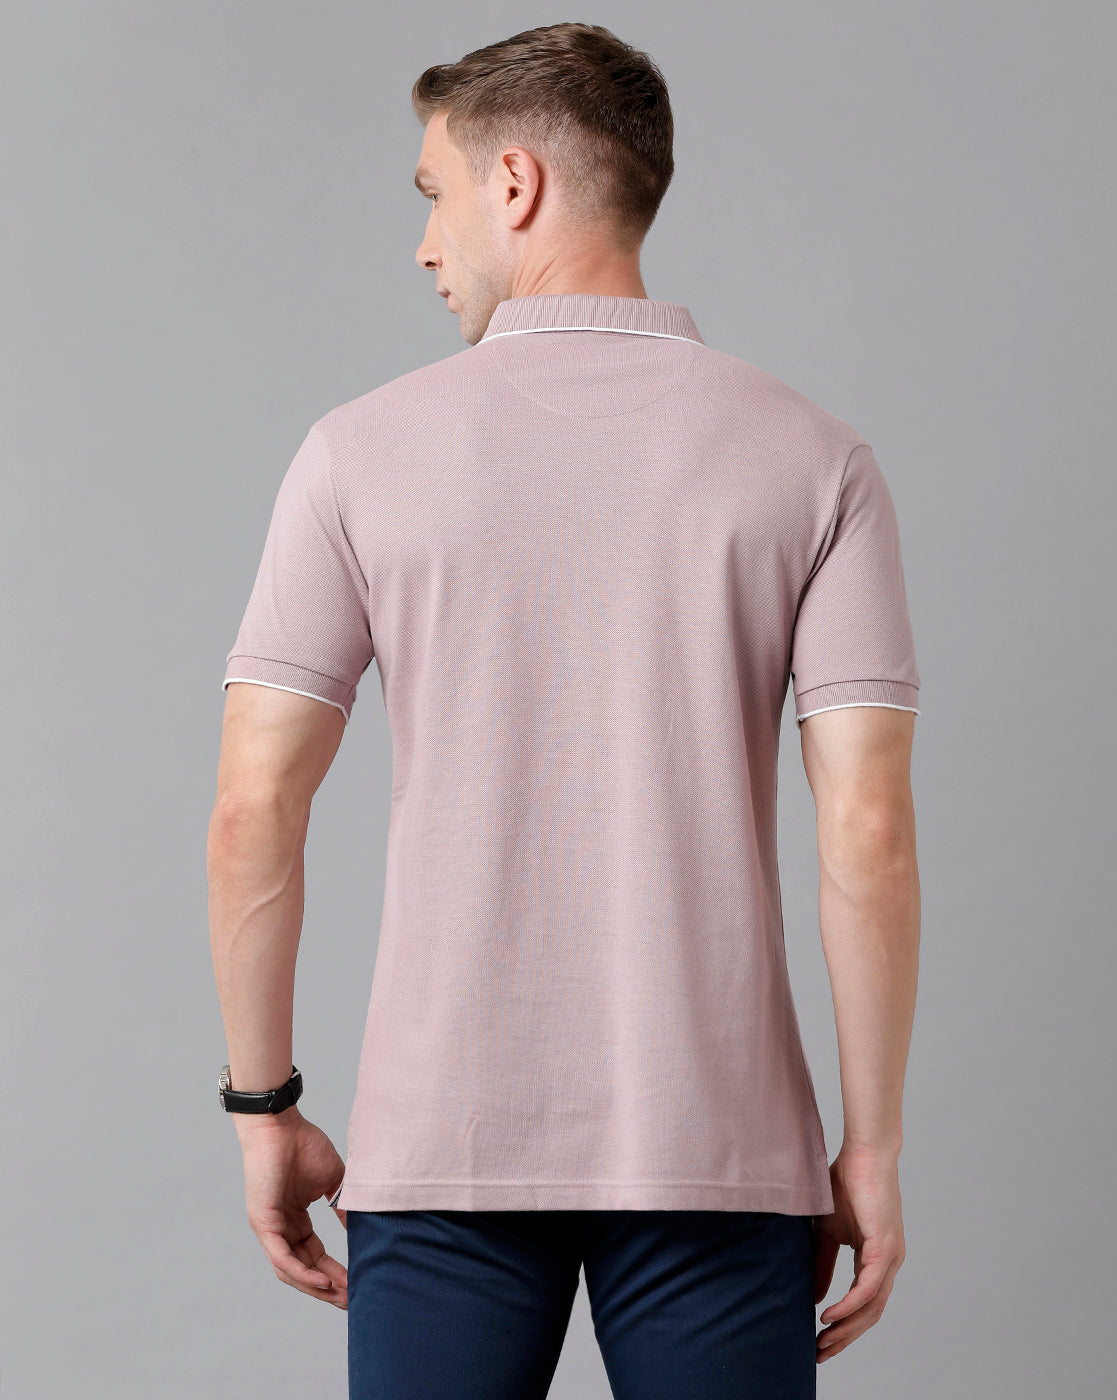 Classic Polo Men's Cotton Printed Half Sleeve Slim Fit Polo Neck Lavendar Color T-Shirt | Prm - 713 B